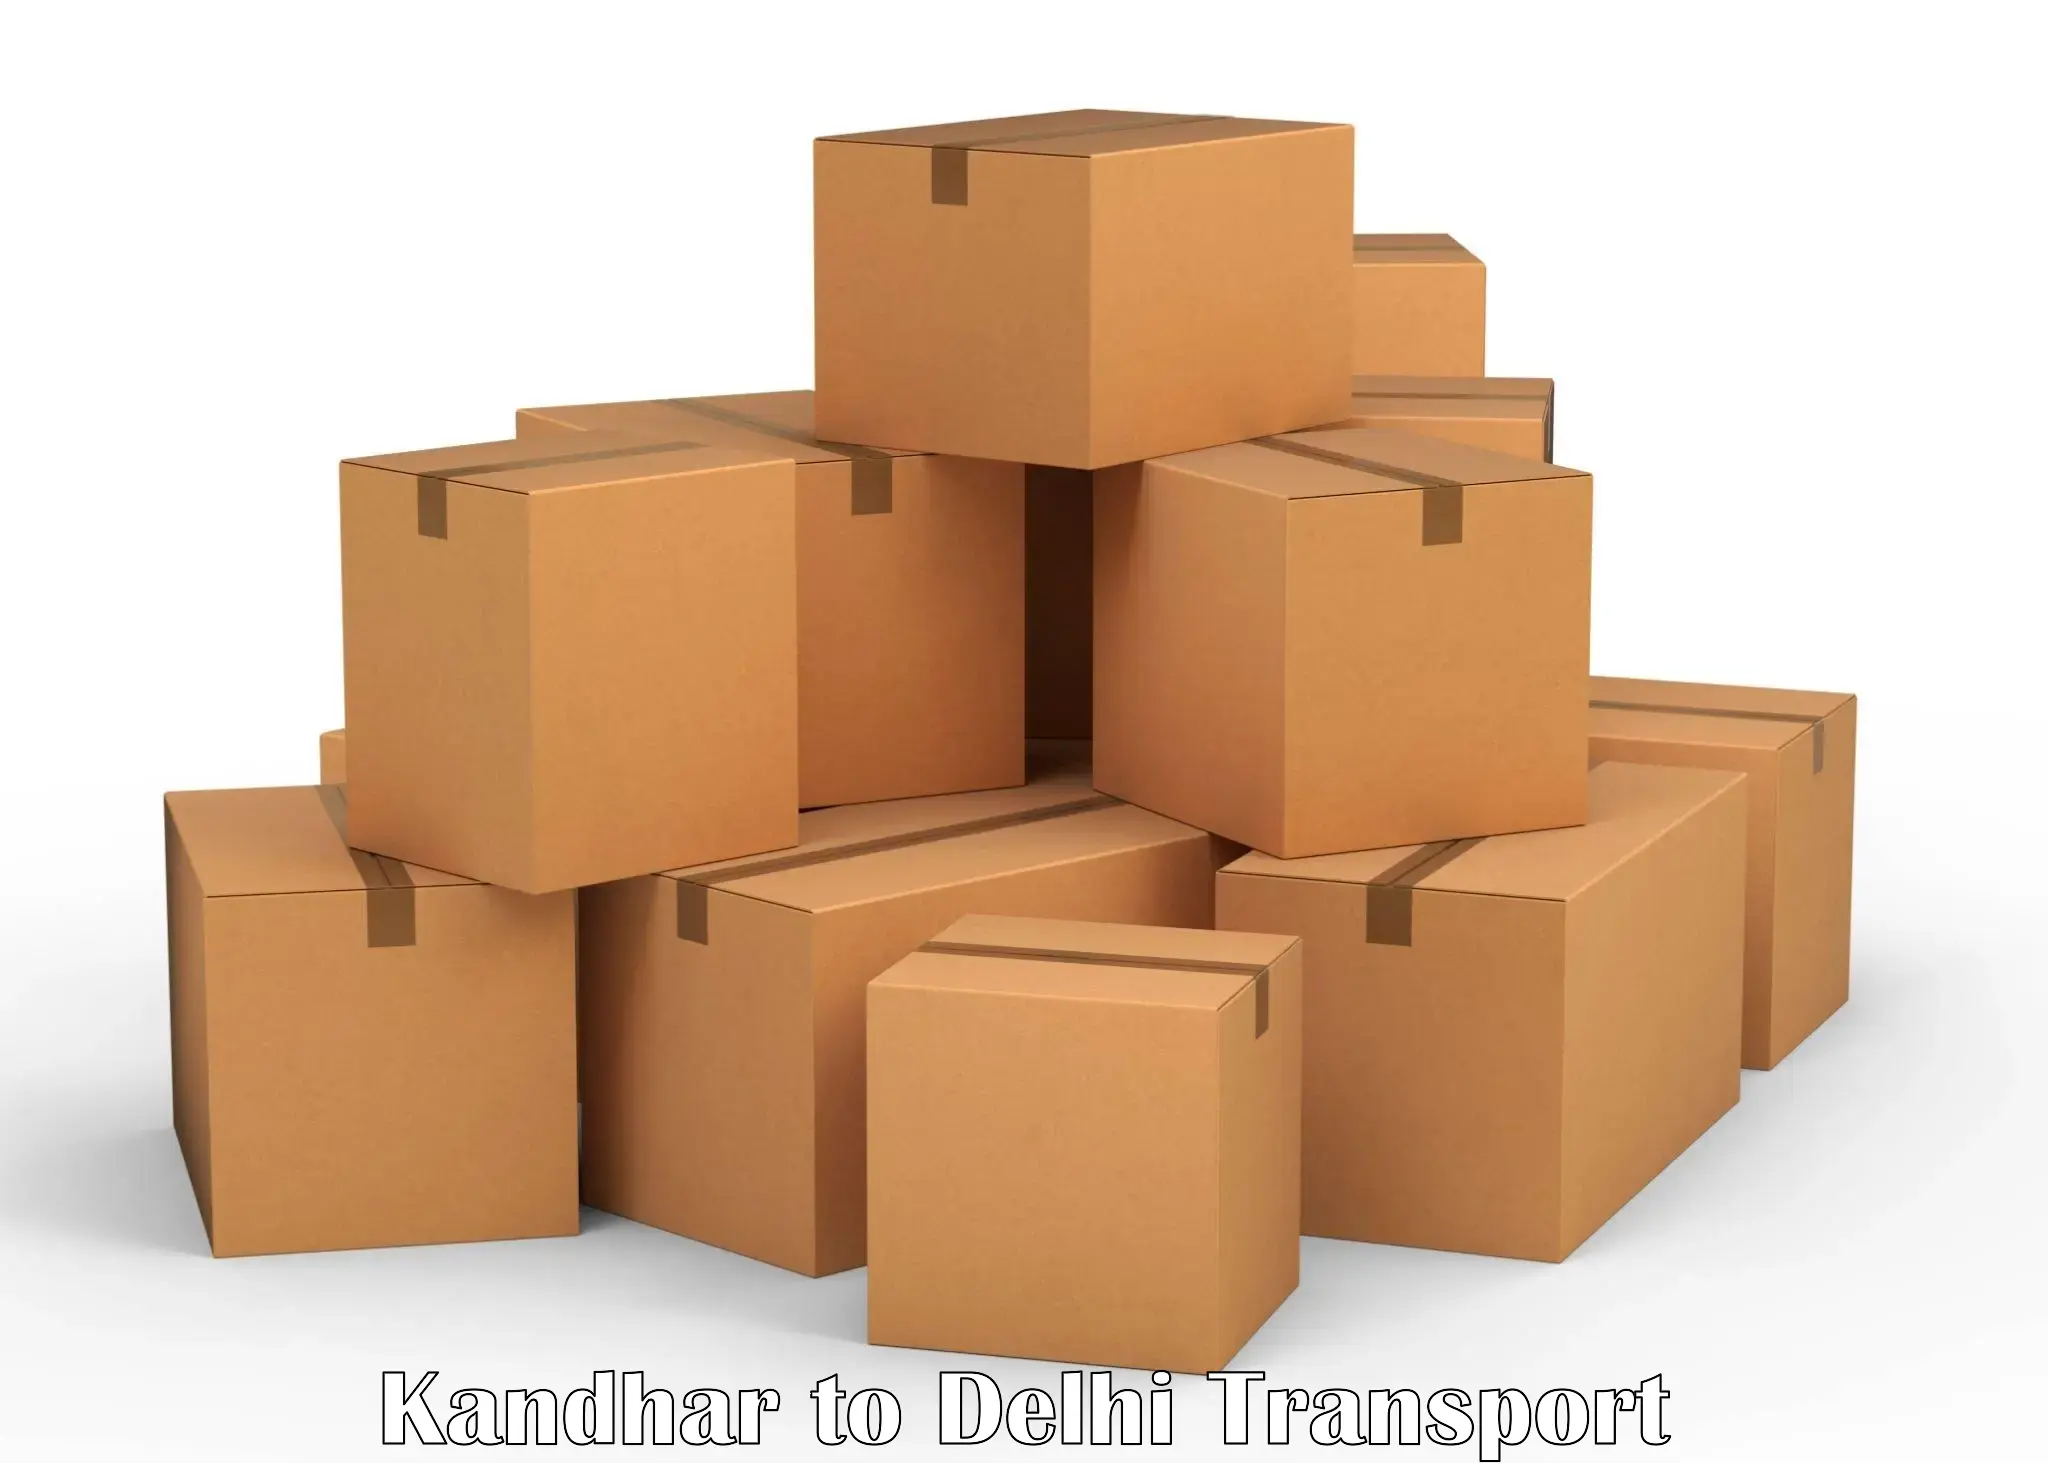 Daily parcel service transport Kandhar to NIT Delhi